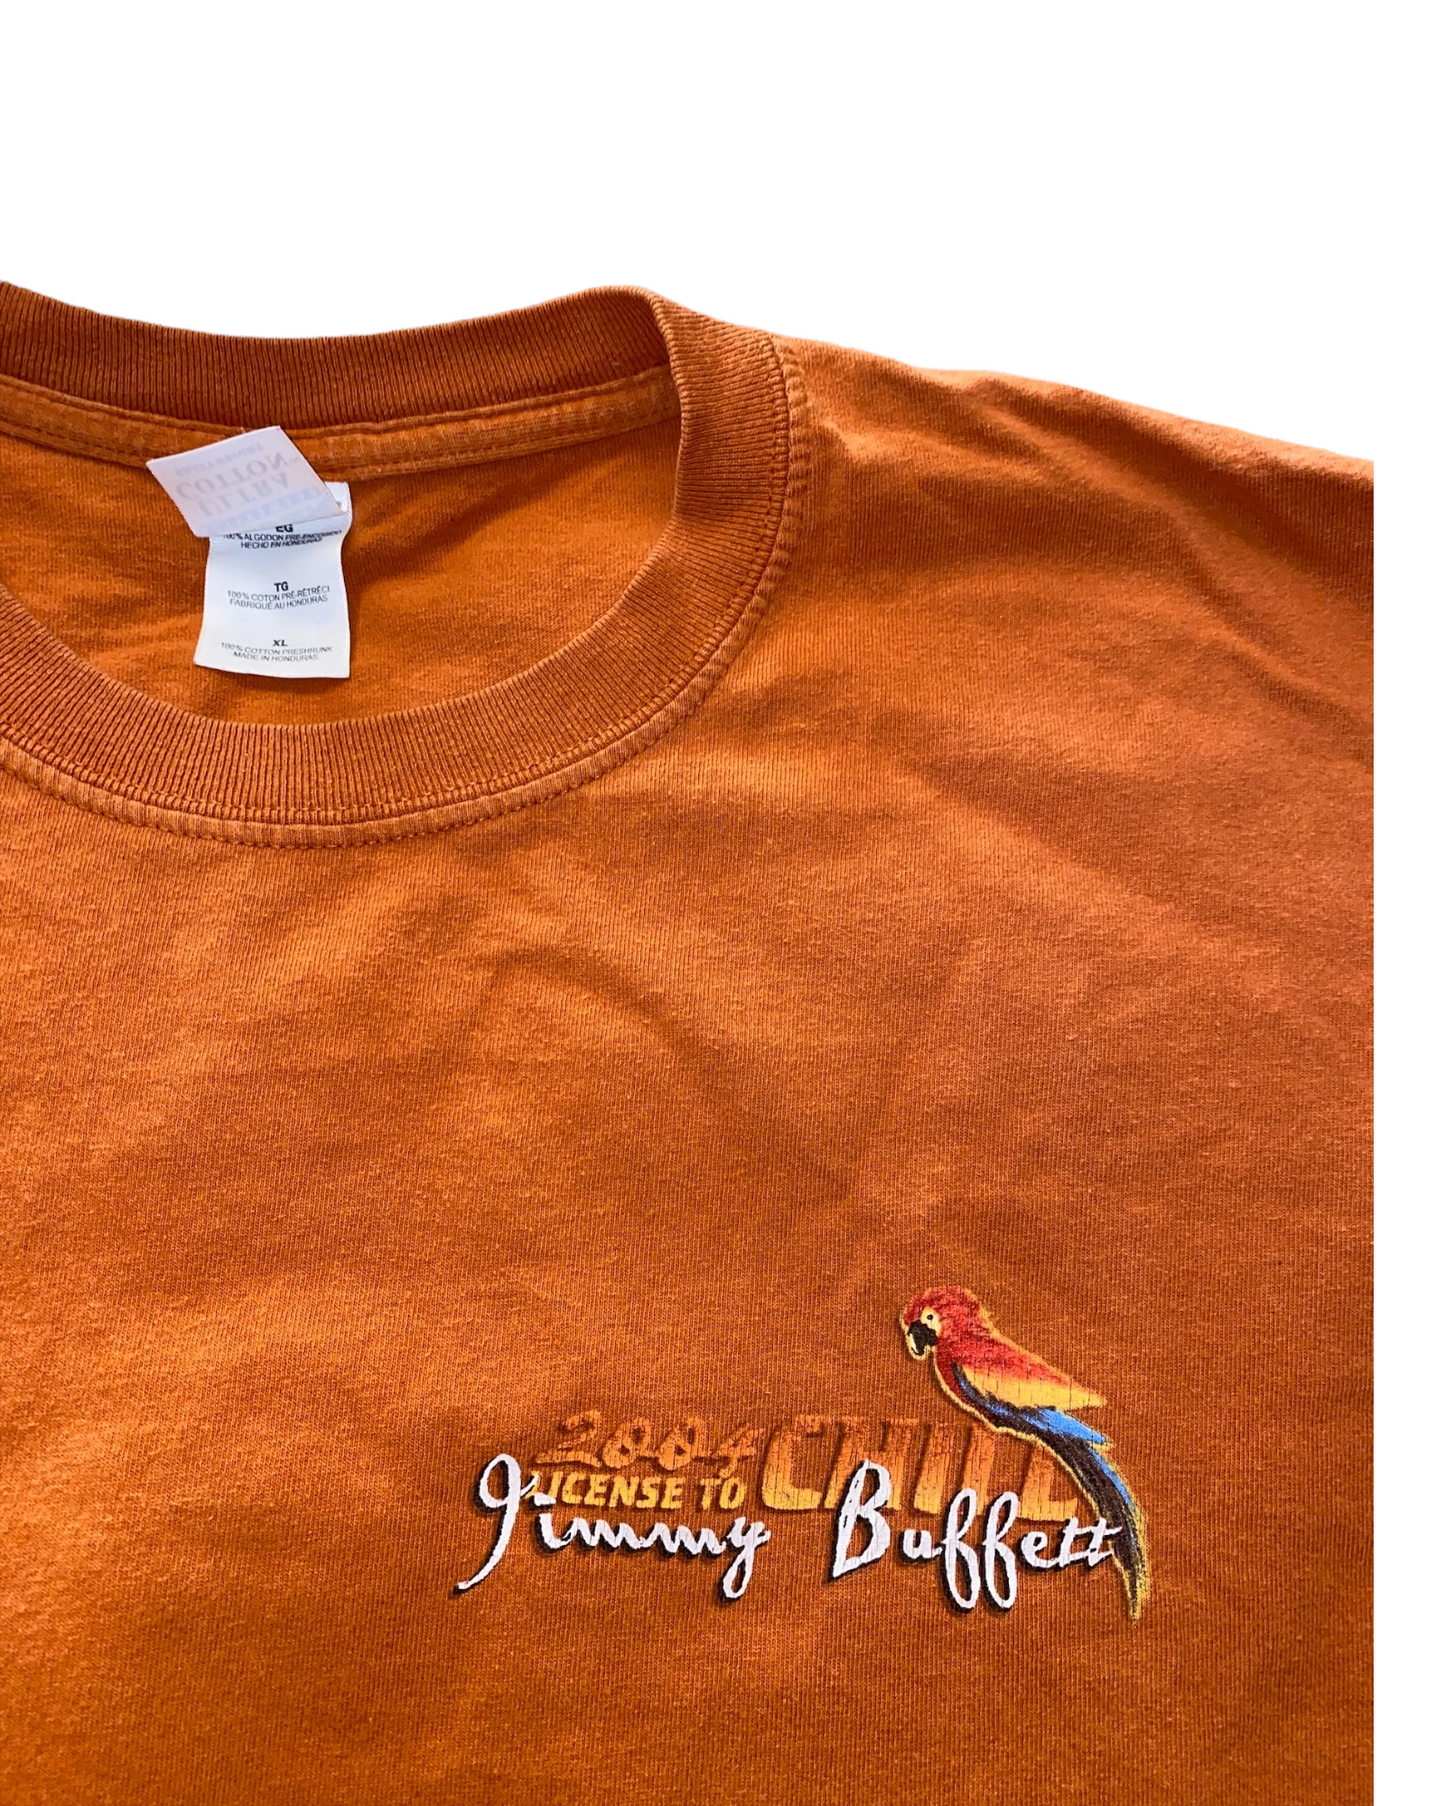 Jimmy Buffett T-shirt